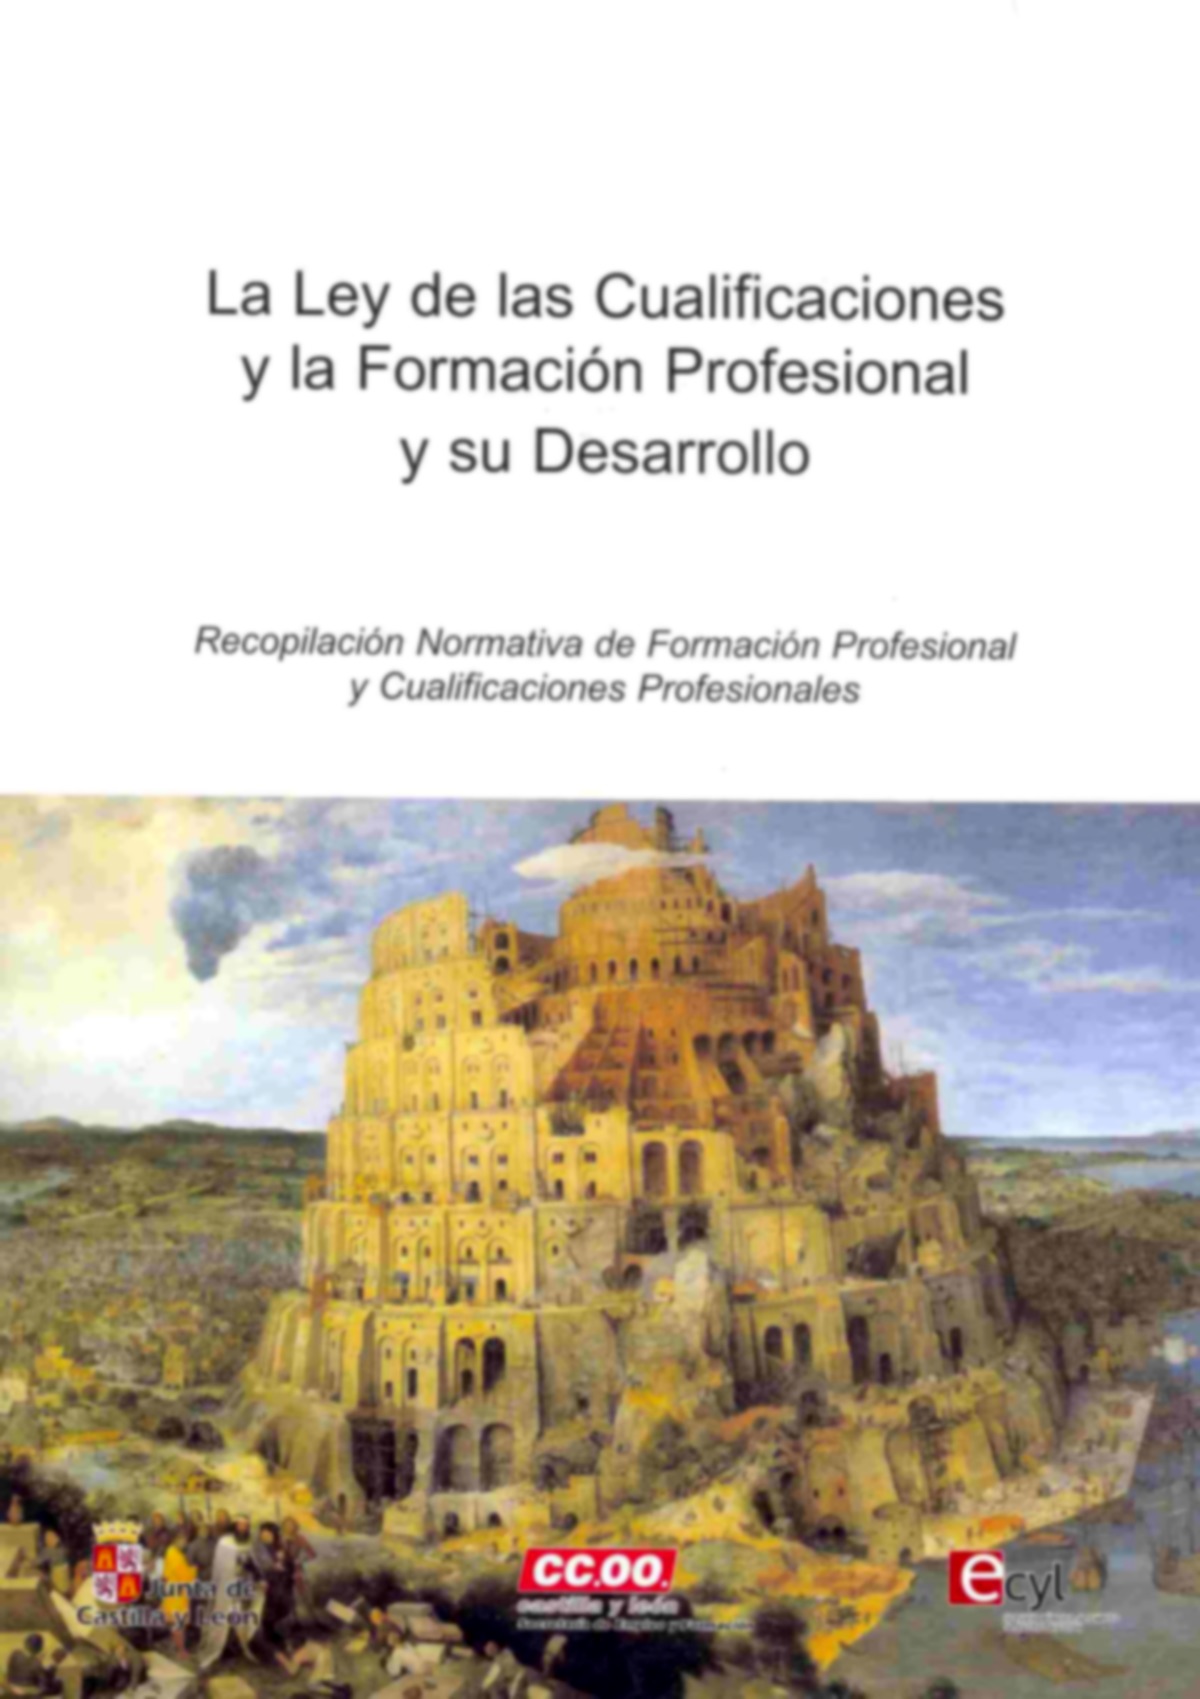 La presente recopilación normativa muestra la evolución del régimen de la formación profesional España, fundamentalmente a partir de la publicación, en 2002, de la Ley Orgánica de las Cualificaciones 